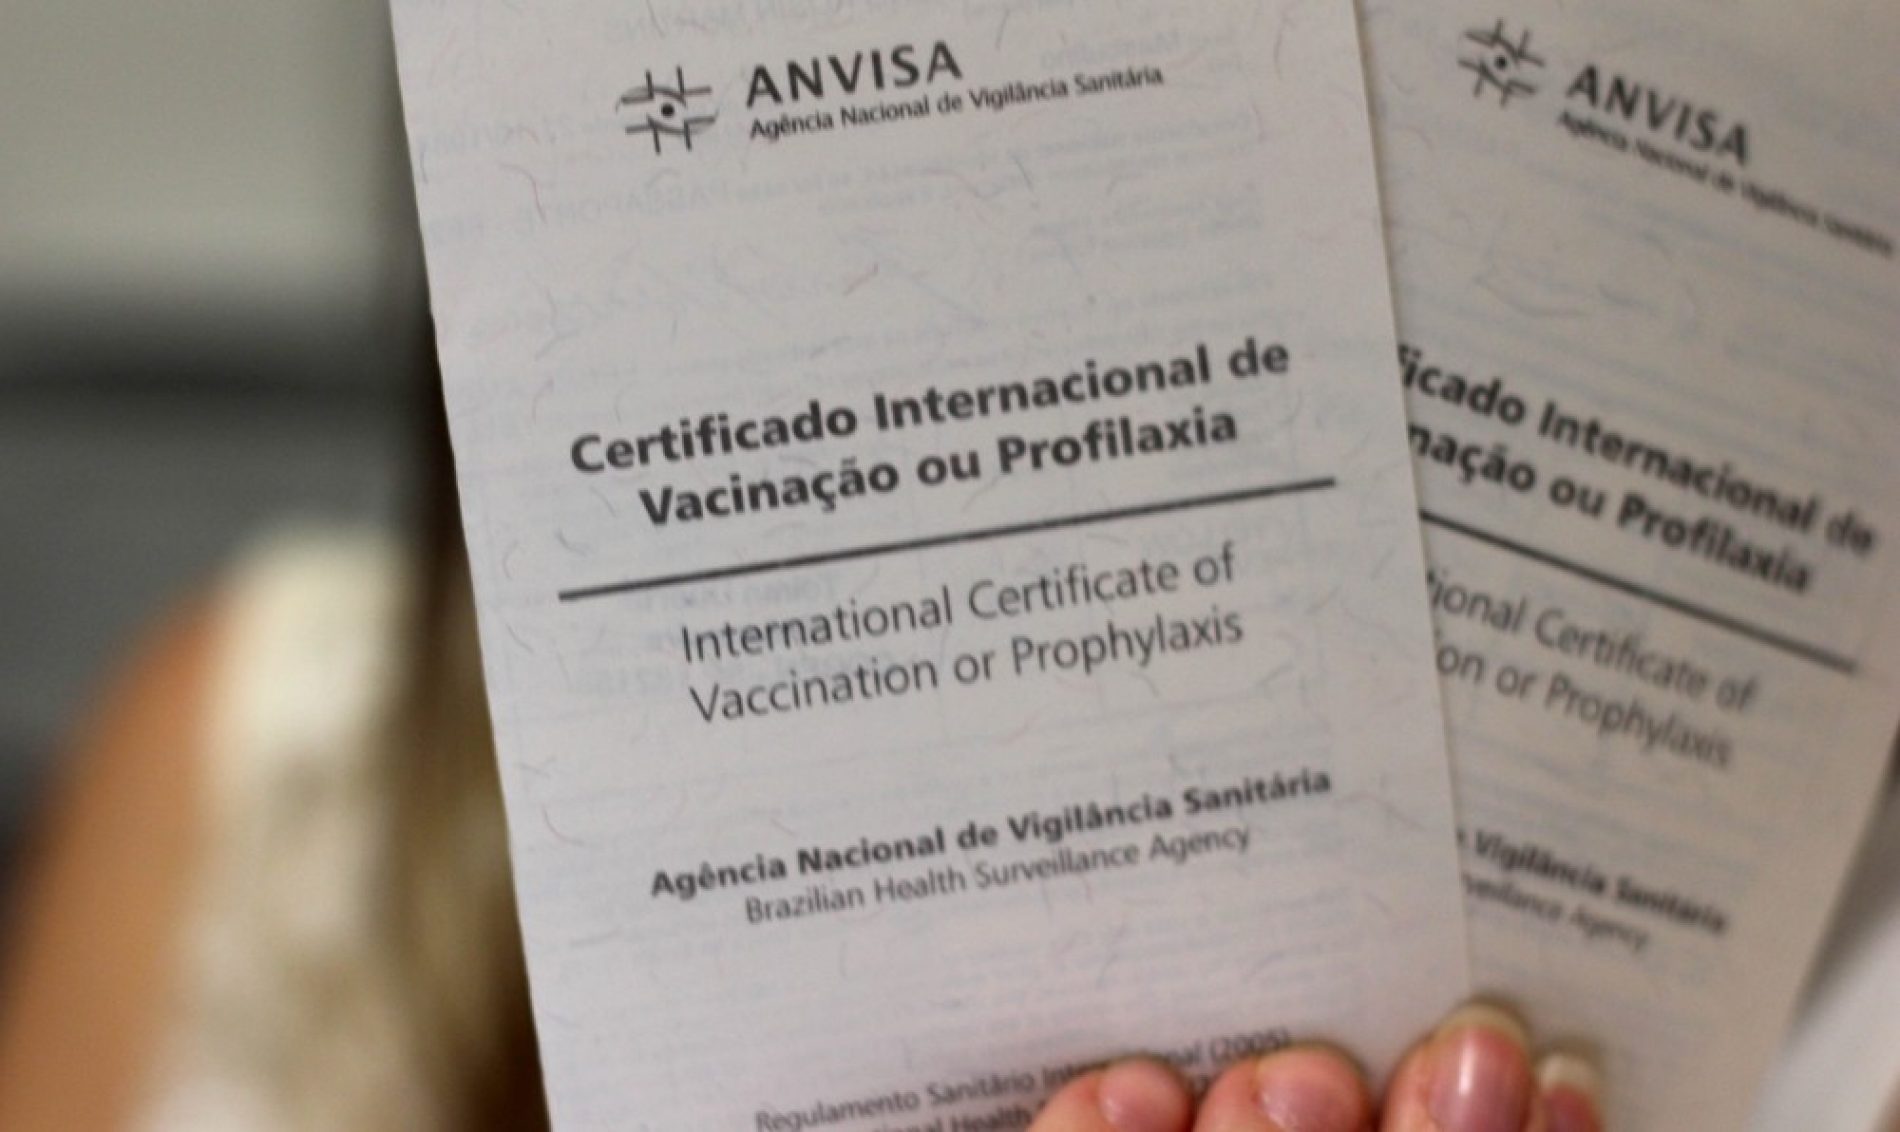 IMUNIZAÇÃO: Só vacina padrão da febre amarela dá certificado de viagem, diz Anvisa